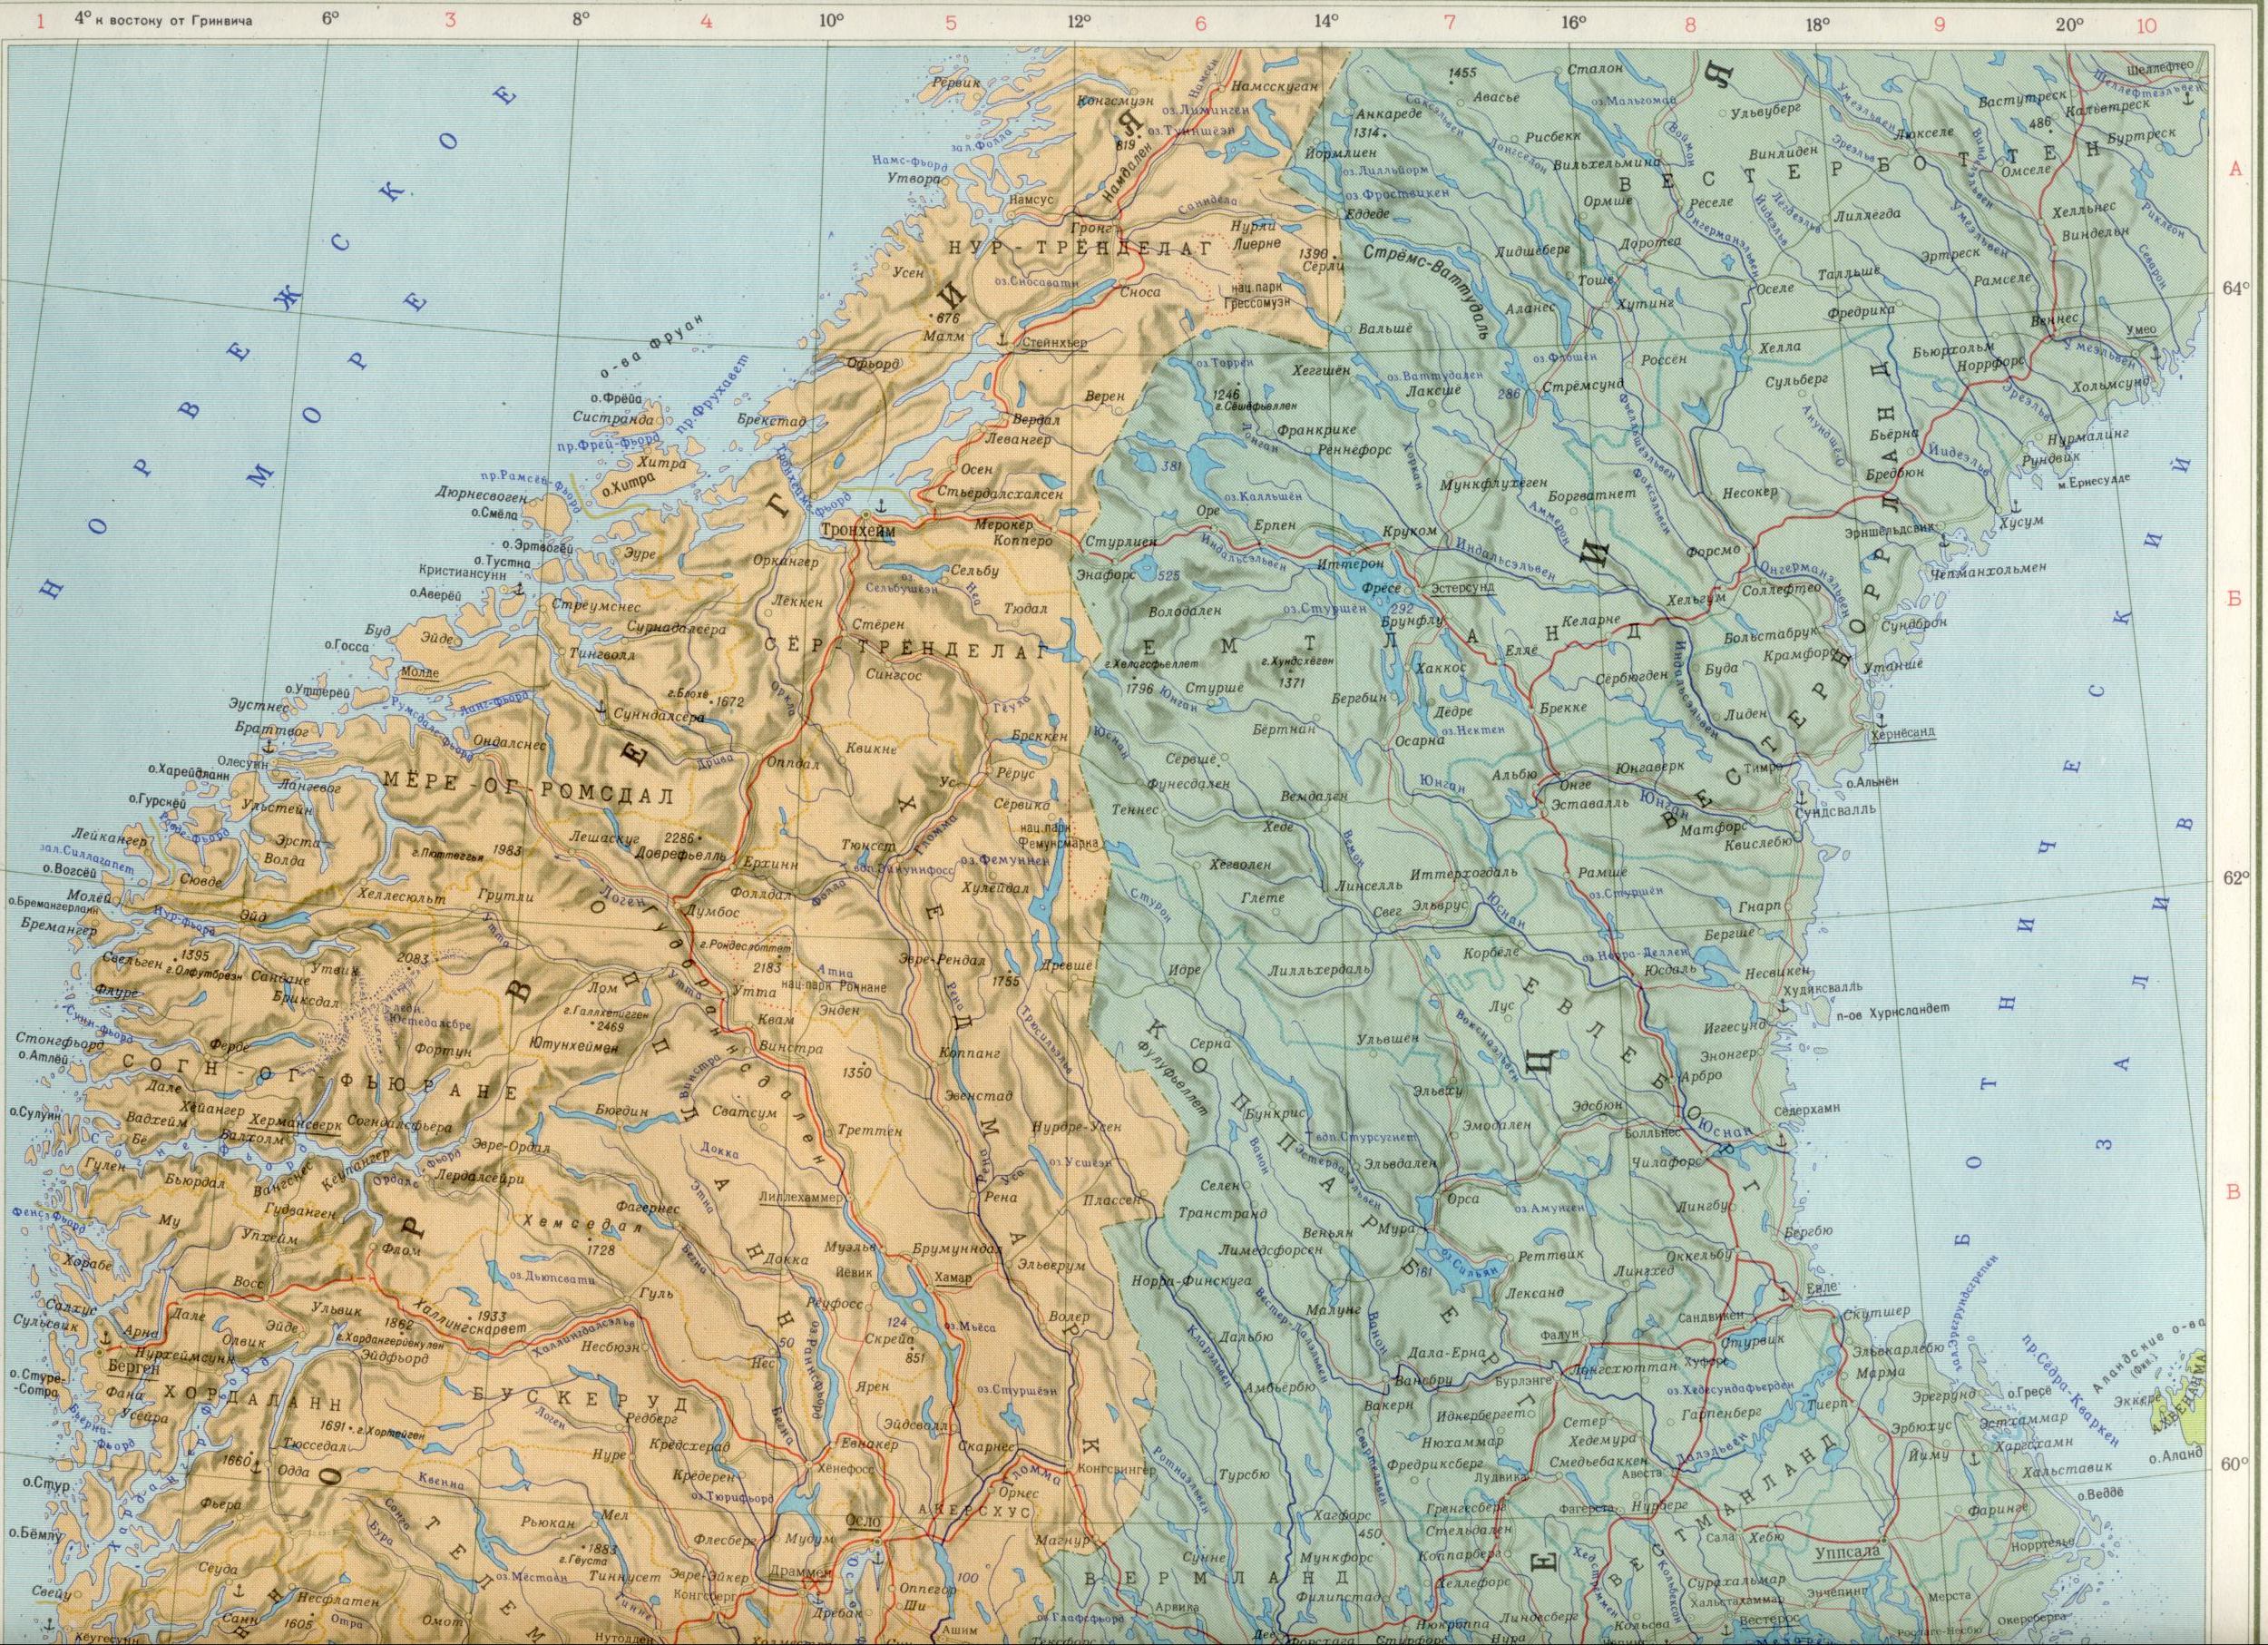 Карта Дании, Швеции, Норвегии 1см=30км. скачать бесплатно политические карты Европы